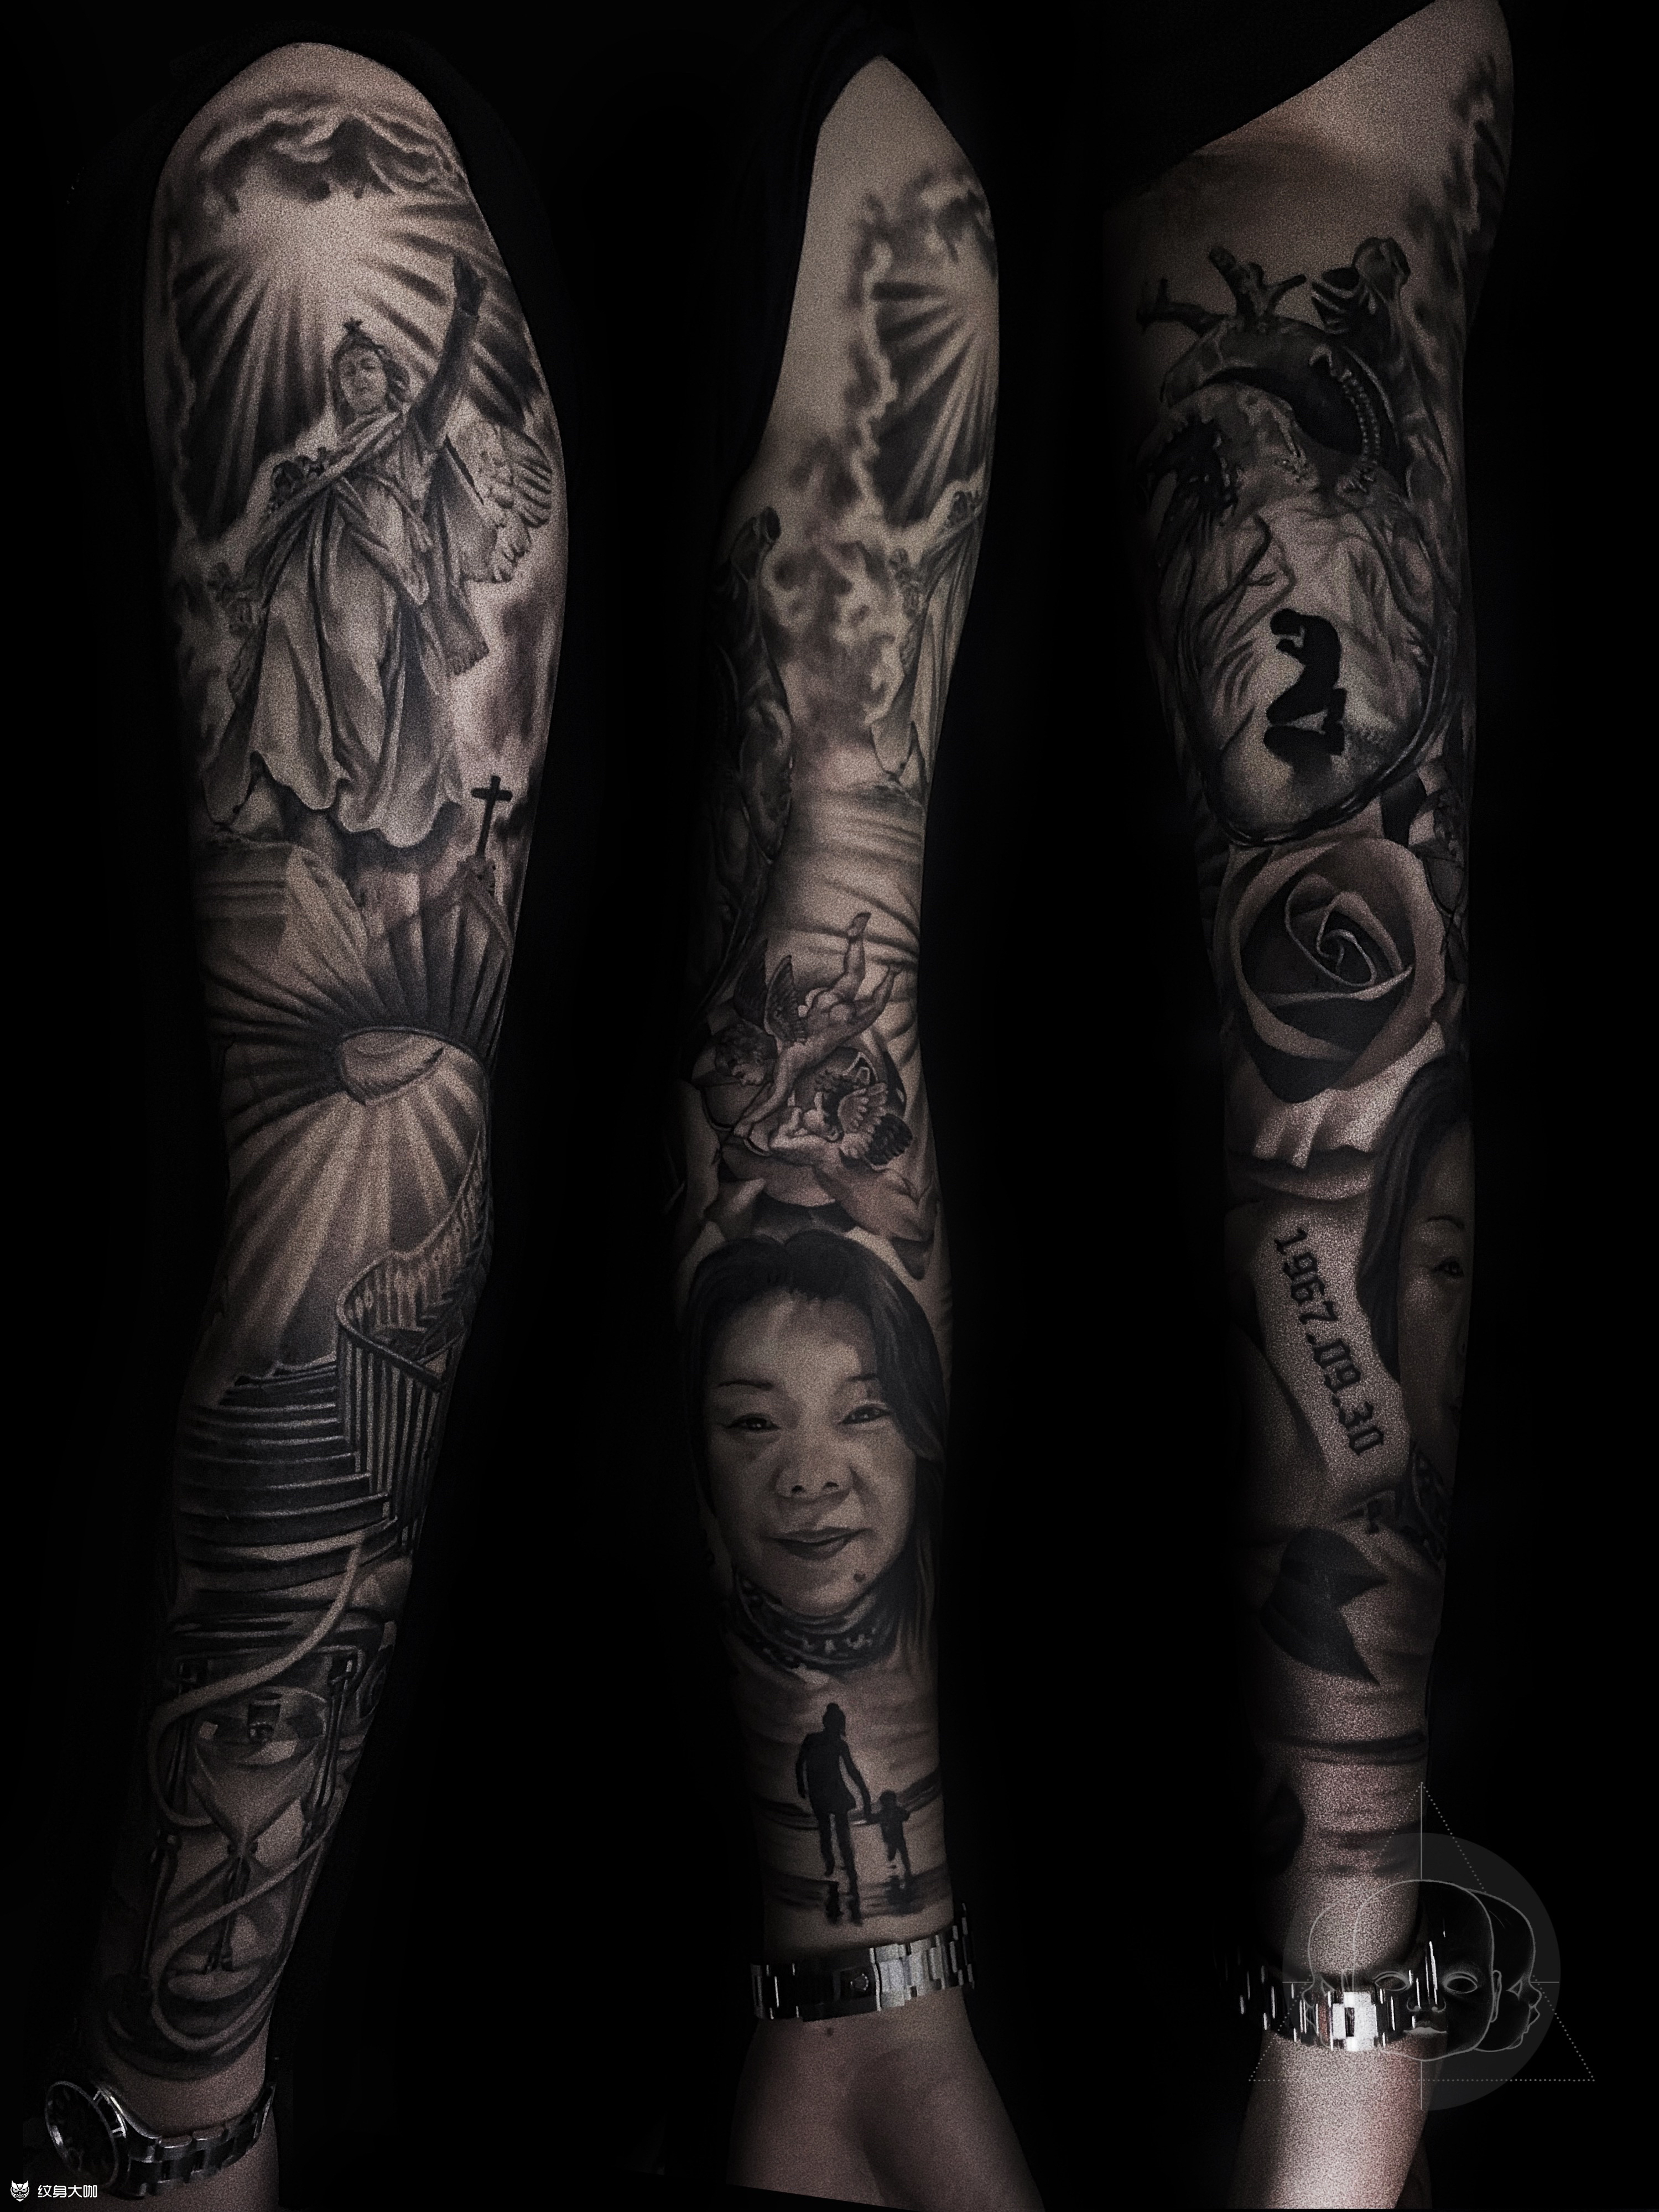 微信联系 ta的主页 简介:一纹身的 简介:一纹身的 写实花臂手臂欧美